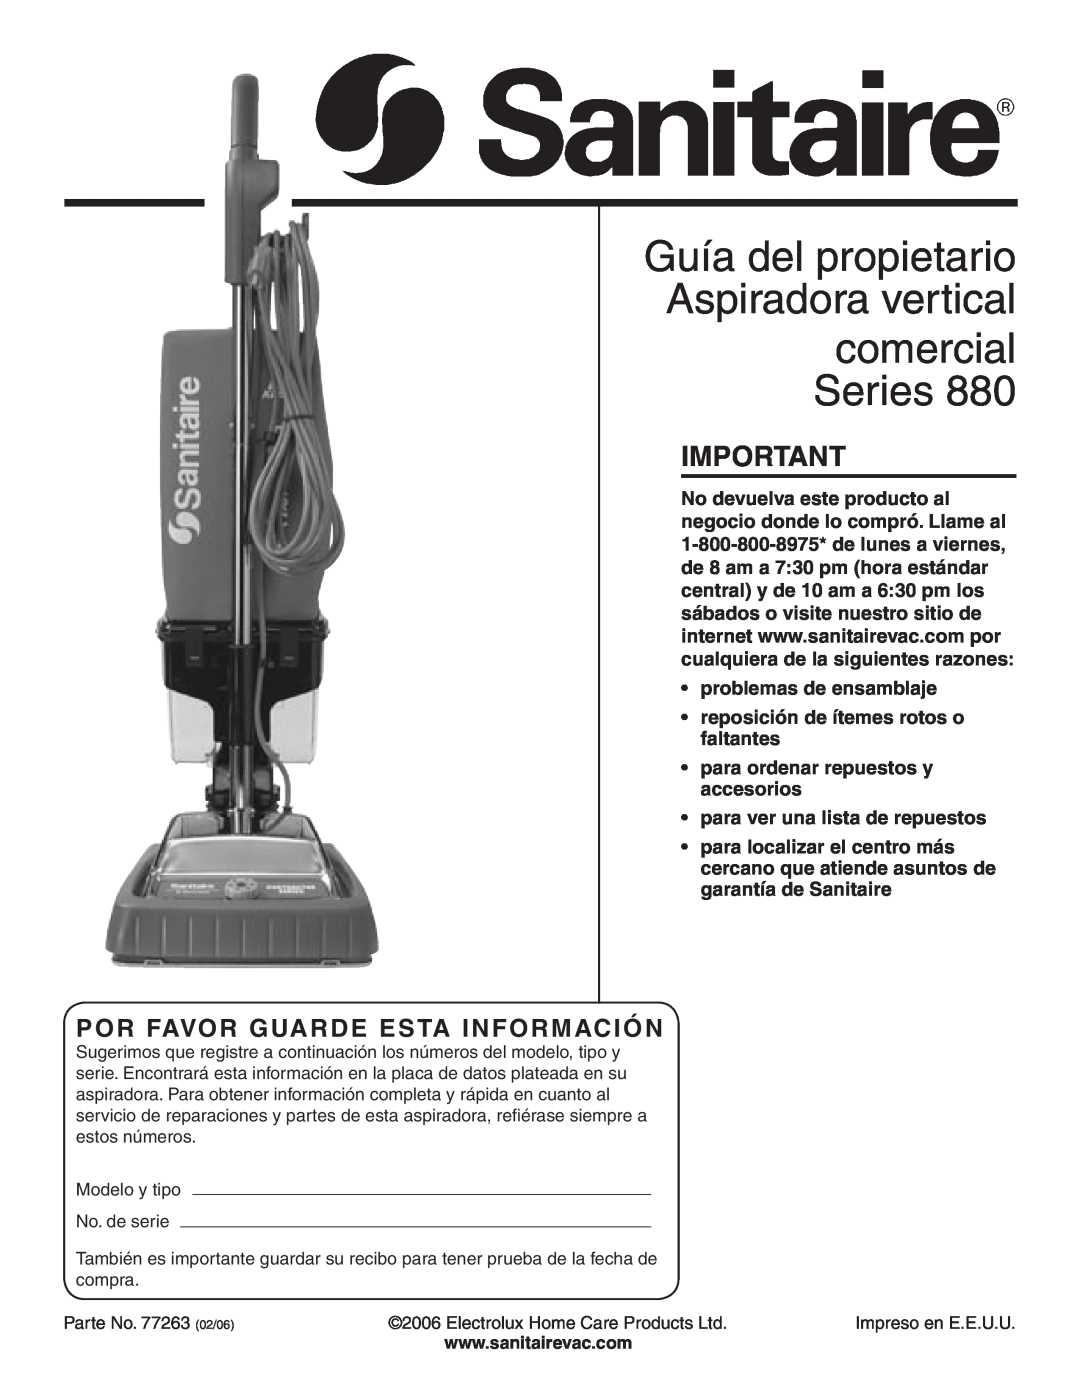 Sanitaire 880 warranty Guía del propietario Aspiradora vertical comercial Series, Por Favor Guarde Esta Información 